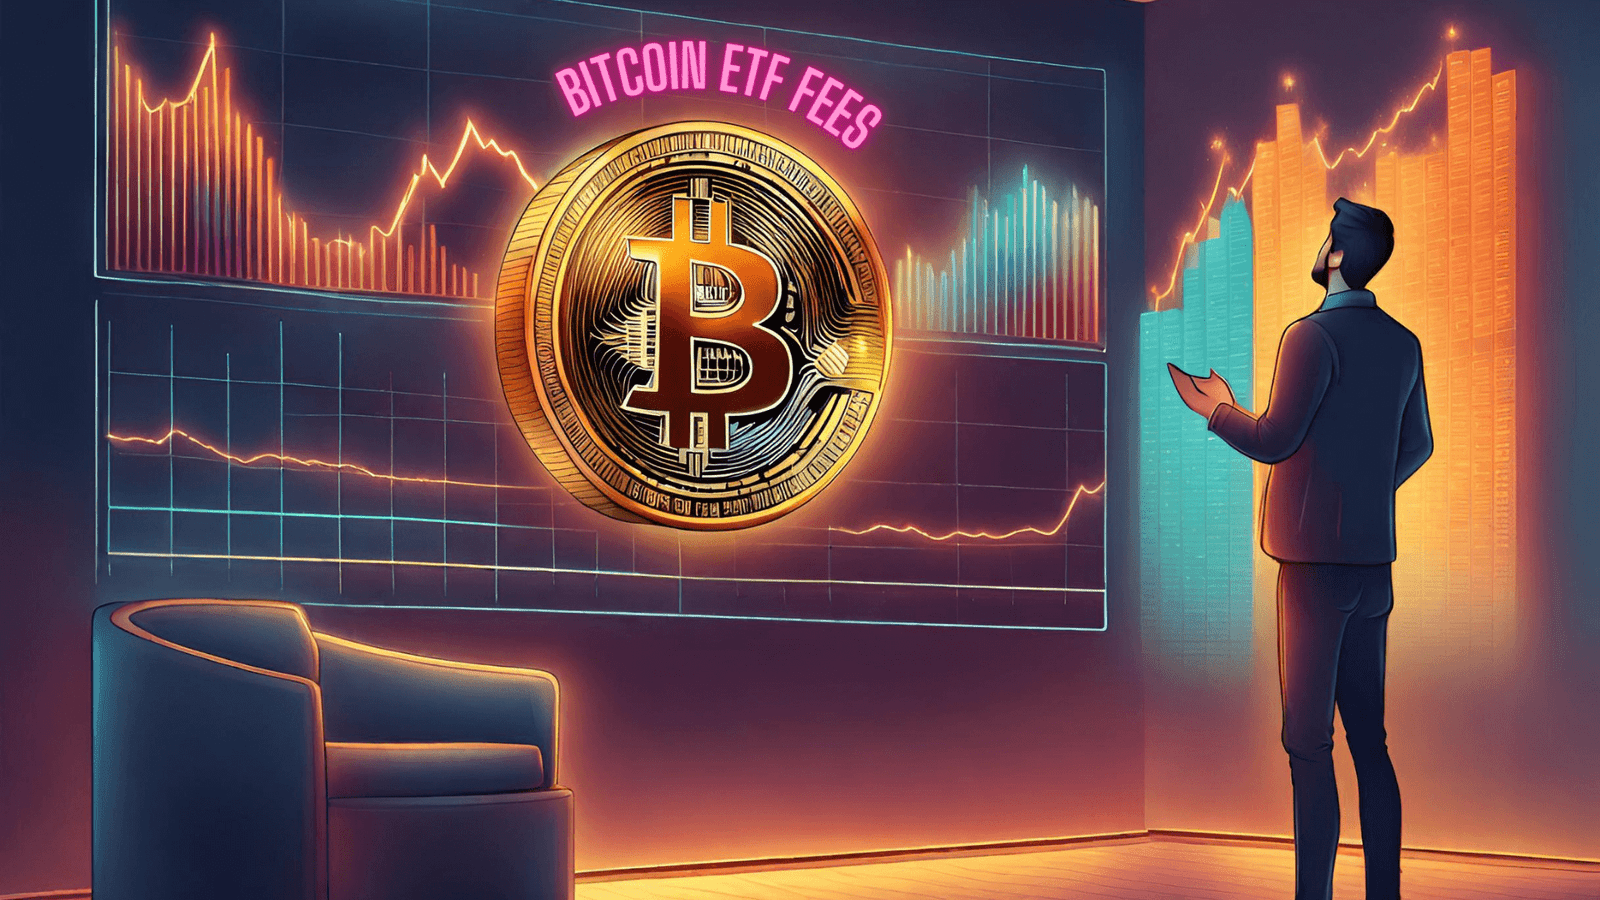 Fees on Bitcoin ETF